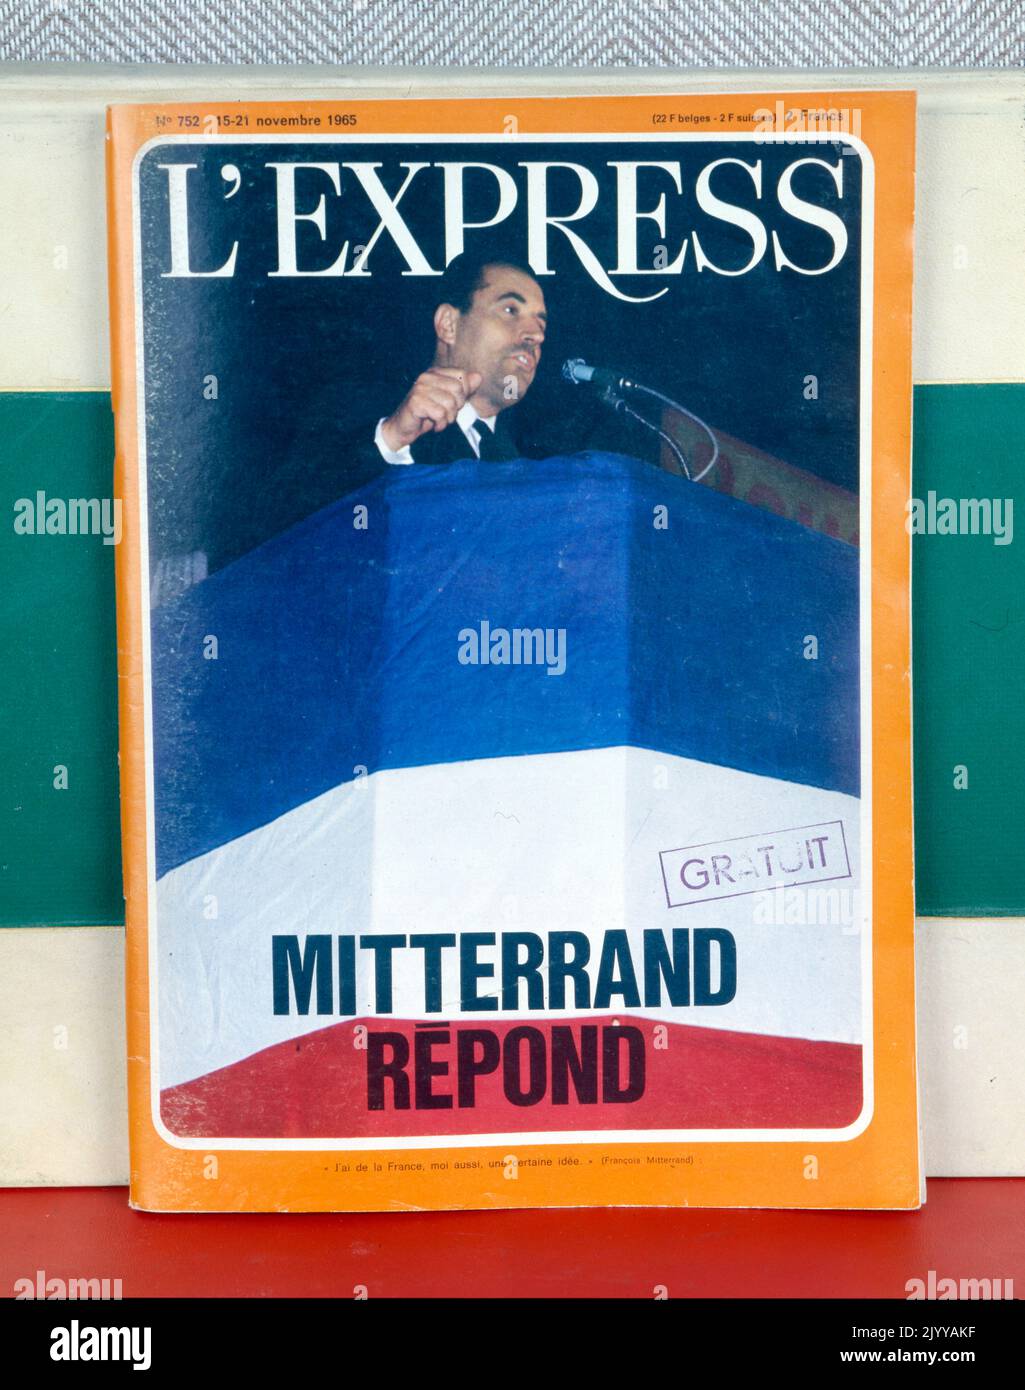 Fotografia colorata di un uomo in pulpito dalla pubblicazione 'l'Express'. Esso si intitola «risposte Mitterrand», datata 15-21 novembre 1965. Foto Stock